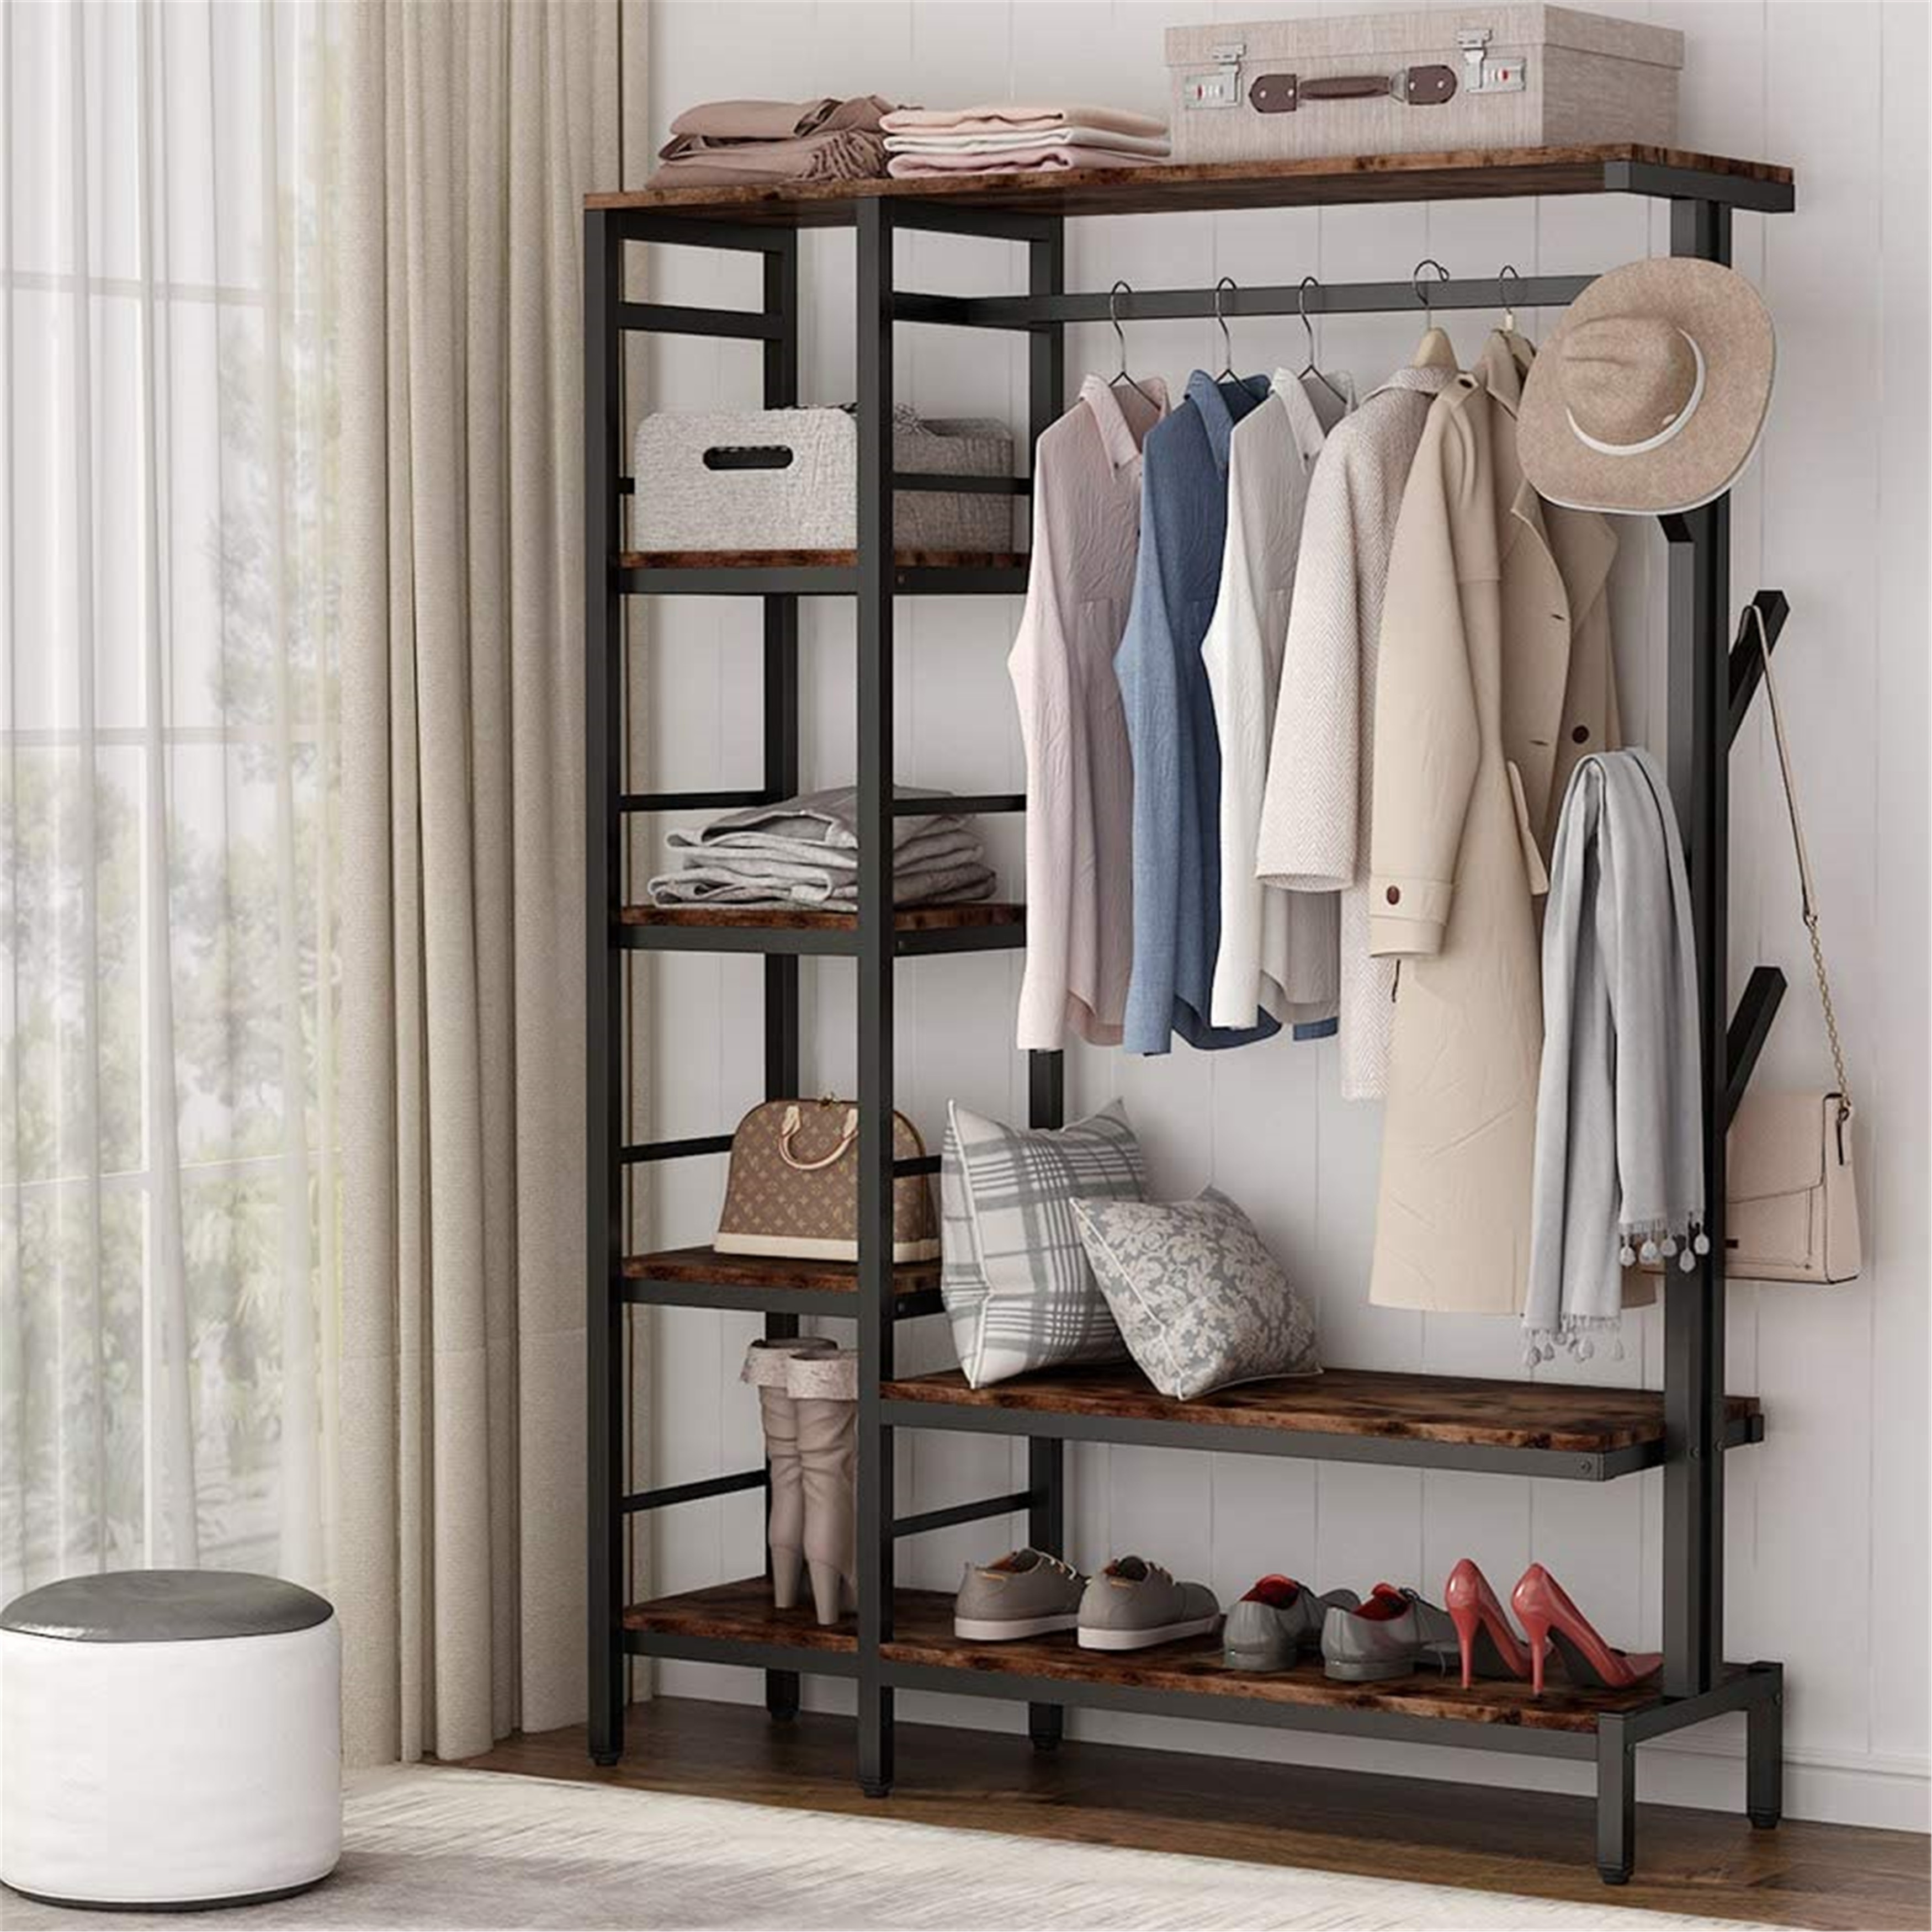 Clothes Garment Hanger Closet Rack Holder Stand Organizer Shelf Home Storag 